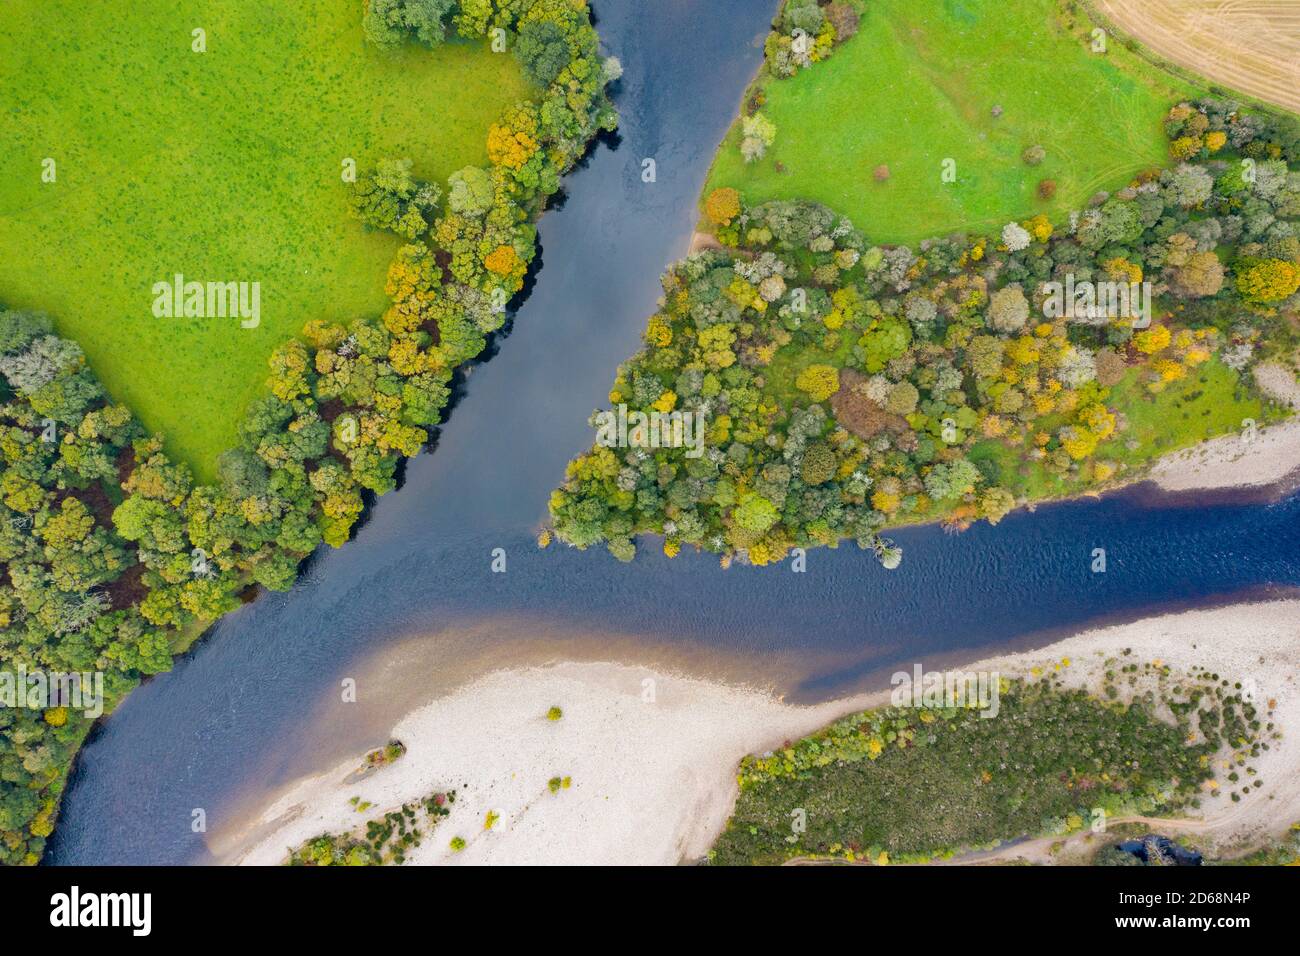 Vista de otoño de la confluencia del río Tay y el río Tummel en Ballinluig. El río Tay (arriba) y el río Tummel son dos de los ríos ScotlandÕs salmón más importantes. Foto de stock